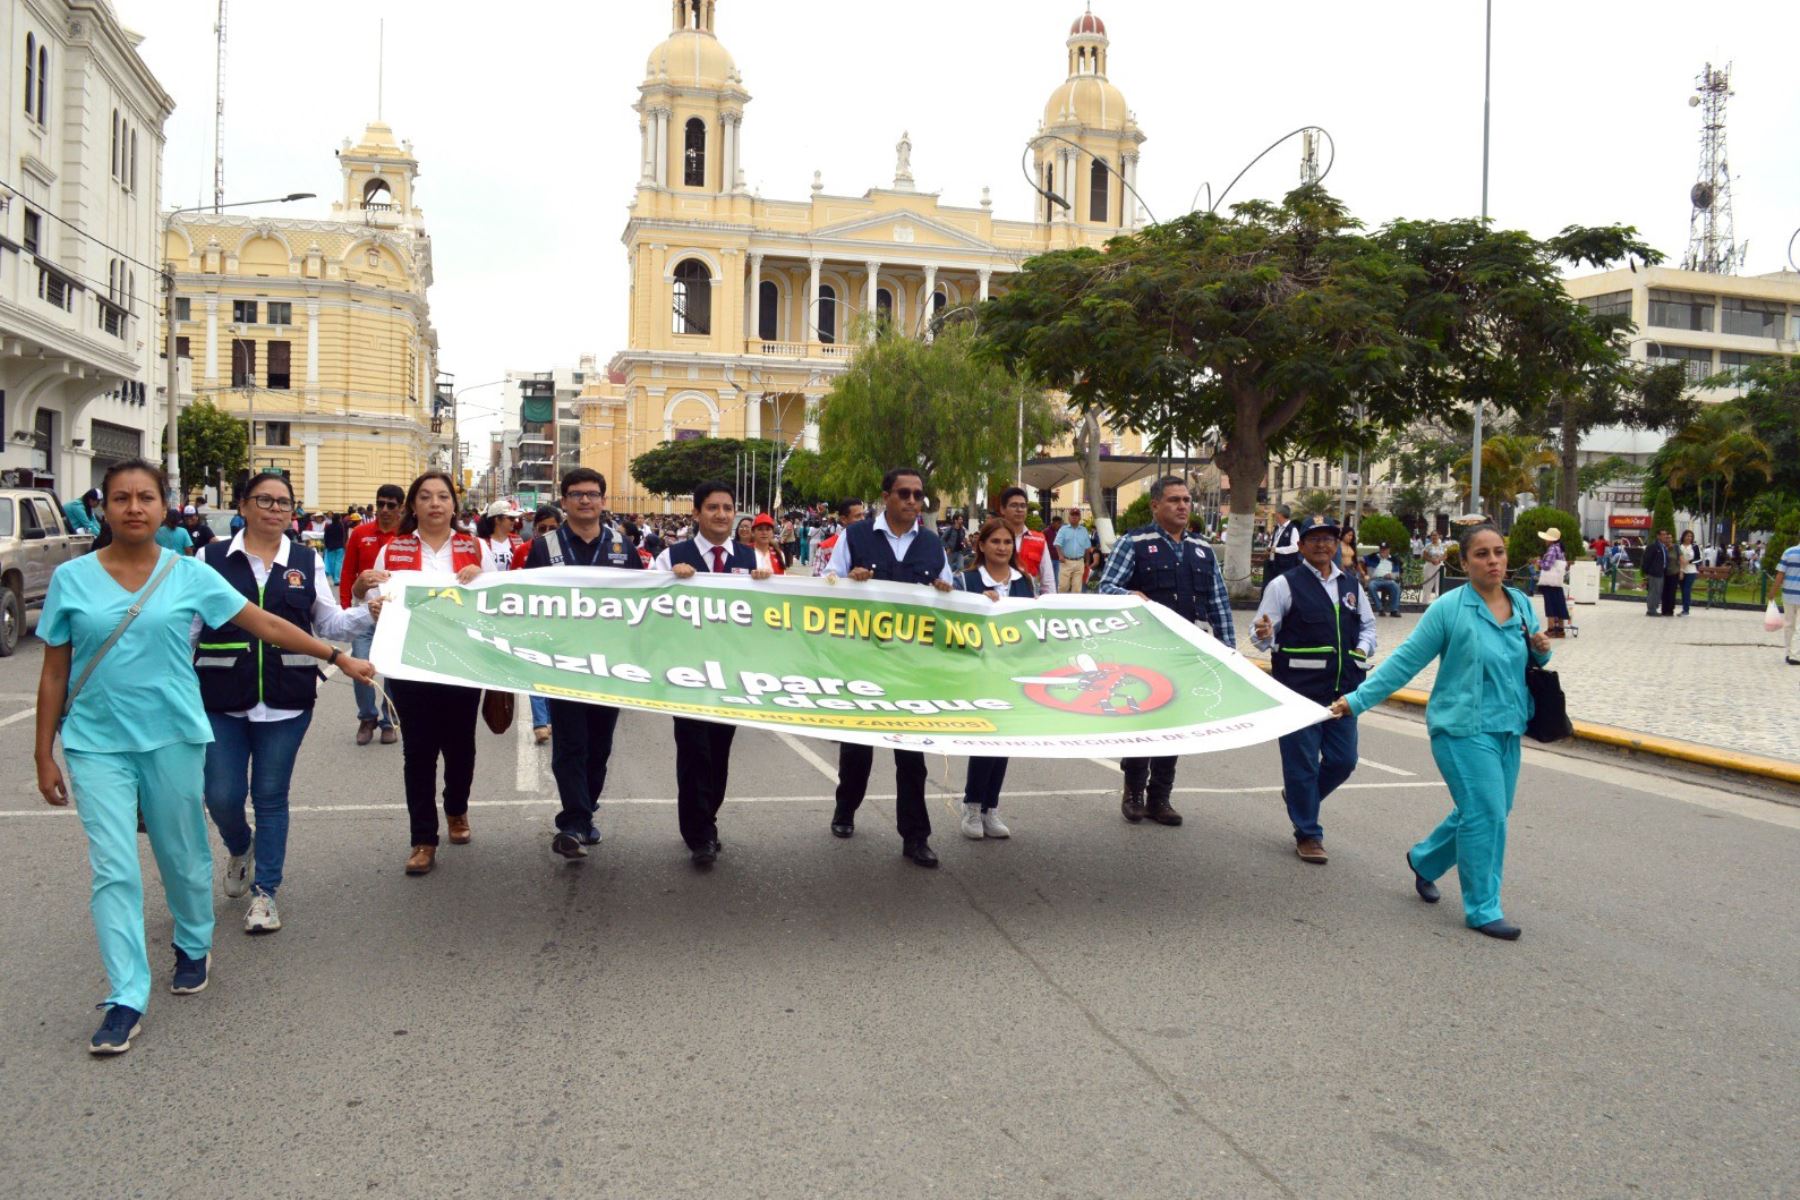 La marcha de sensibilización forma parte del plan de intervención promovido por la Gerencia Regional de Salud Lambayeque. Foto: ANDINA/Difusión